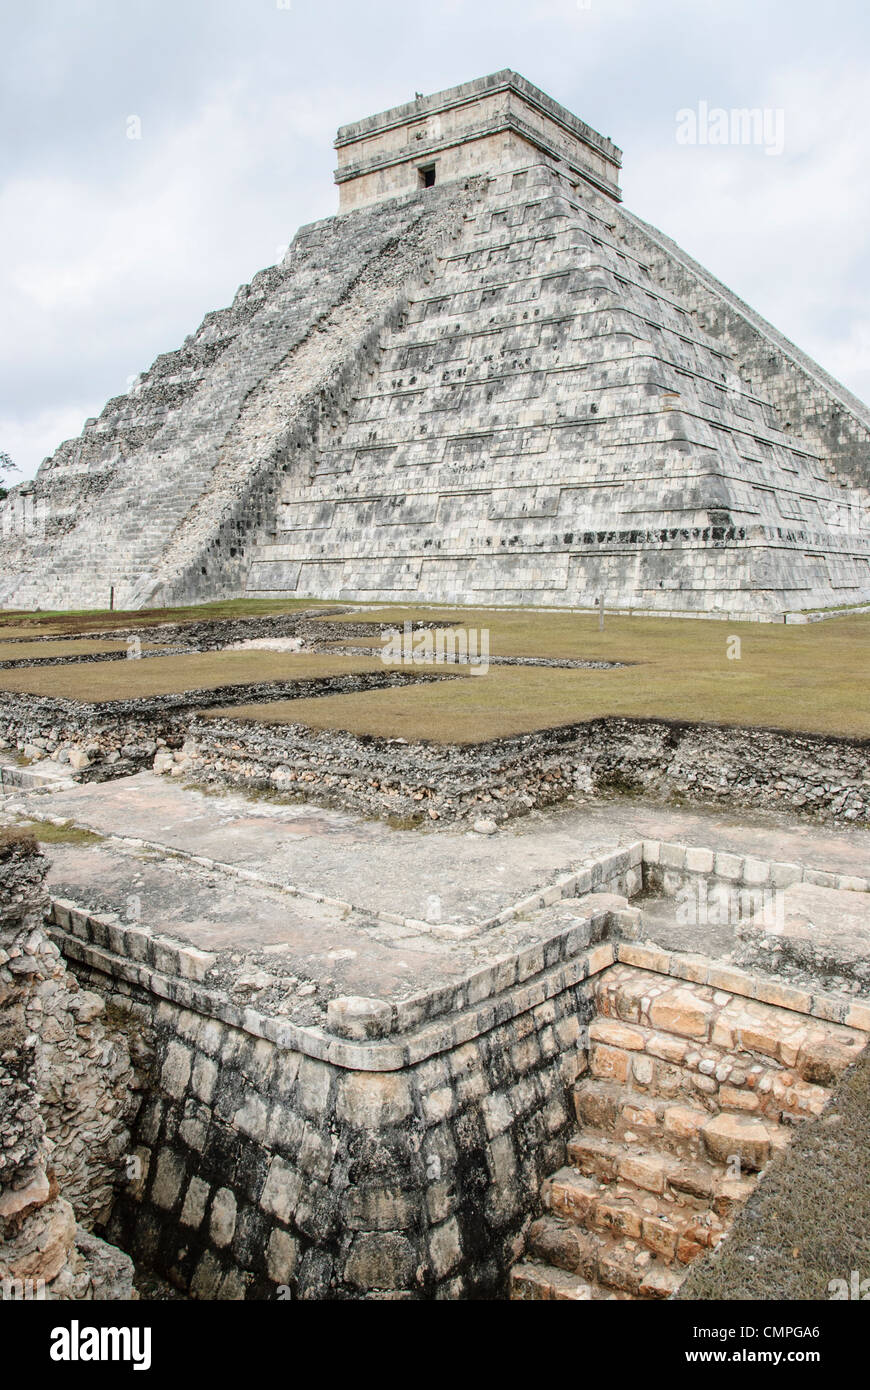 CHICHEN ITZA, Mexique - Excavation devant le Temple de Kukulkan (El Castillo) à la Zone archéologique de Chichen Itza, les ruines d'une importante ville de la civilisation Maya au coeur de la péninsule du Yucatan au Mexique. Banque D'Images